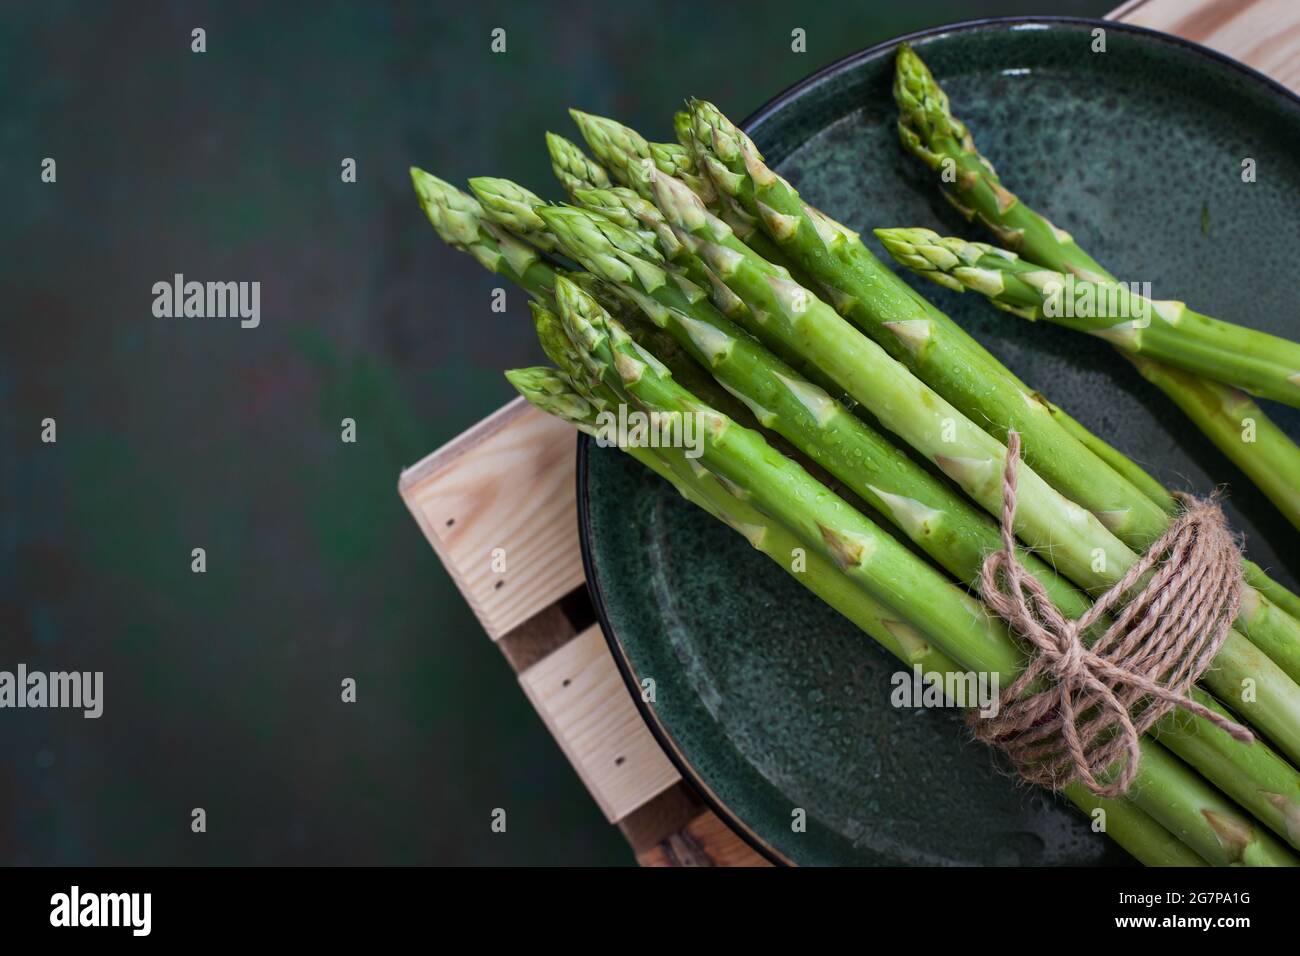 Asparagi freschi crudi su rustico sfondo verde, vista dall'alto Foto Stock